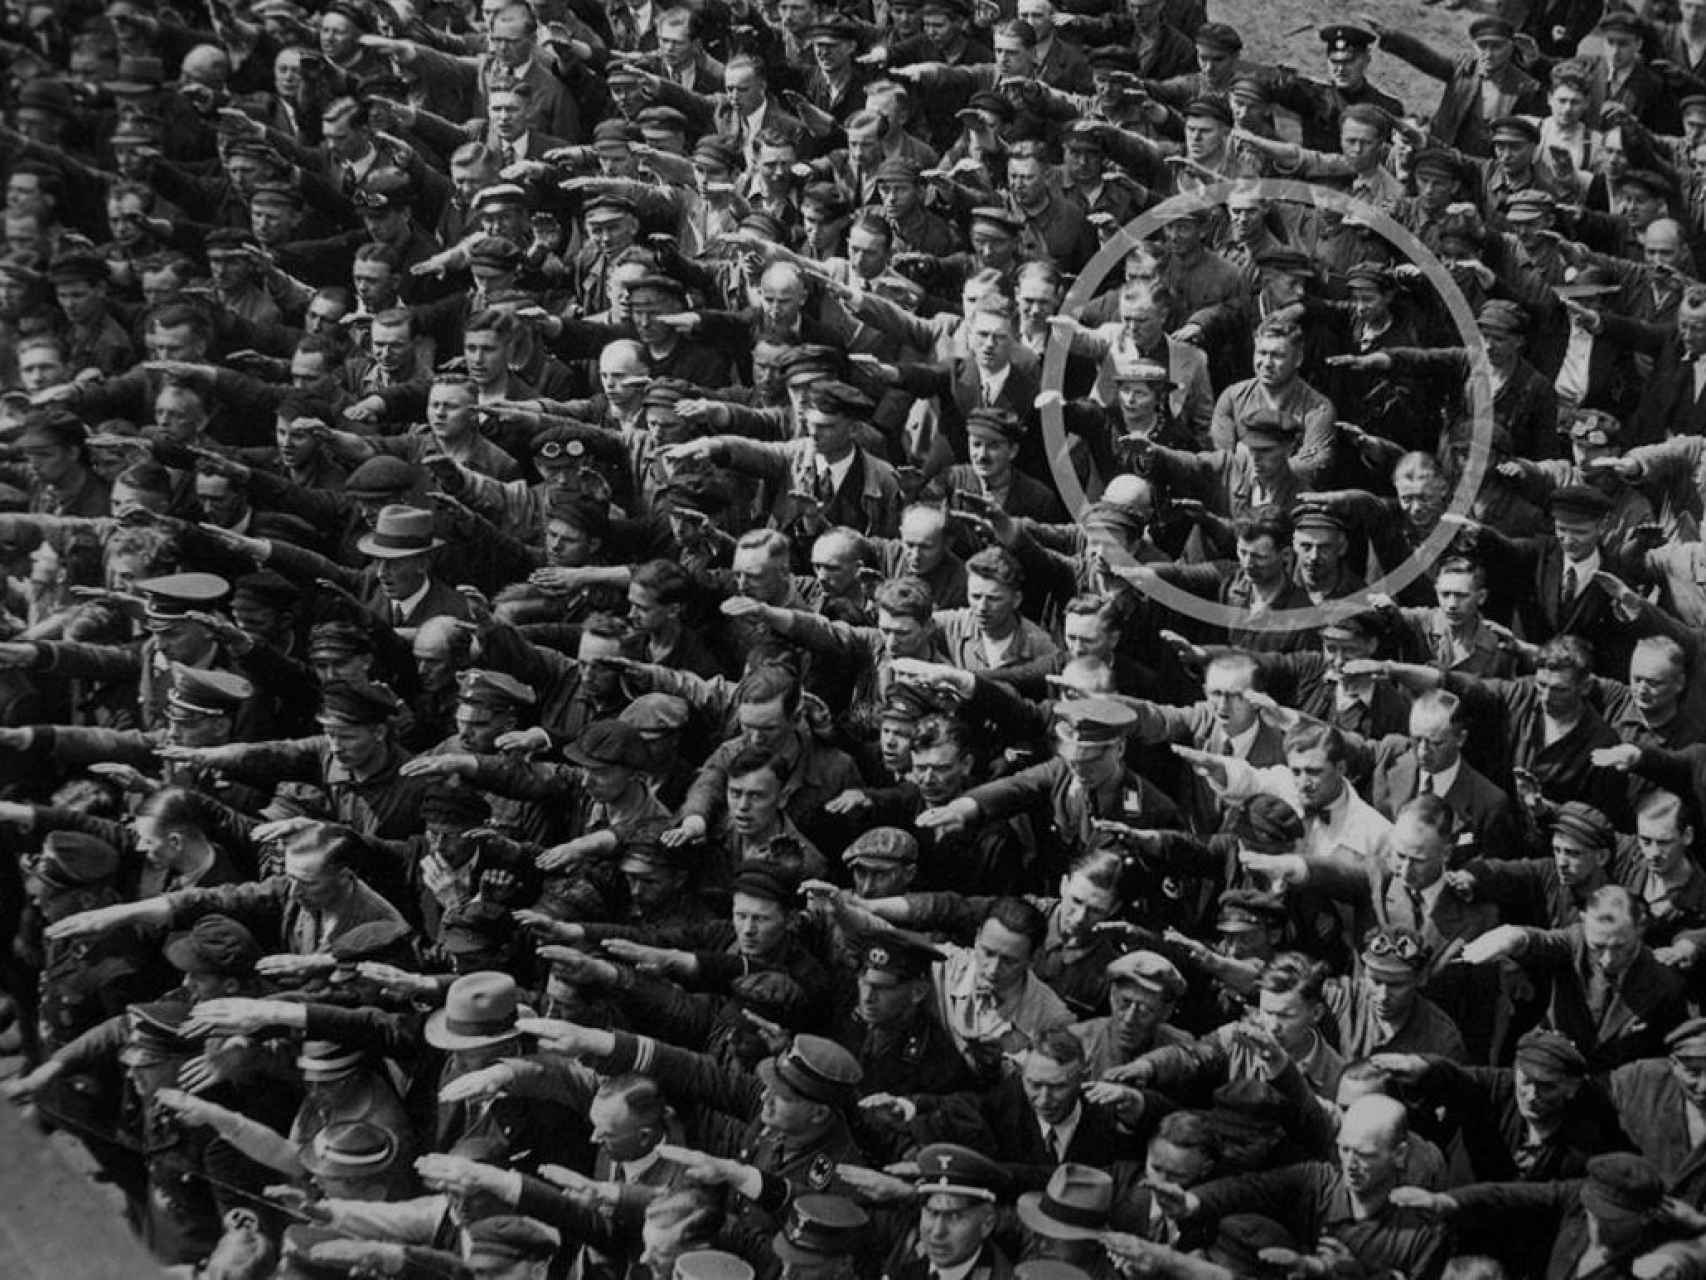 August Landmesser, un obrero alemán, se niega a hacer el saludo nazi en la Alemania de 1936.